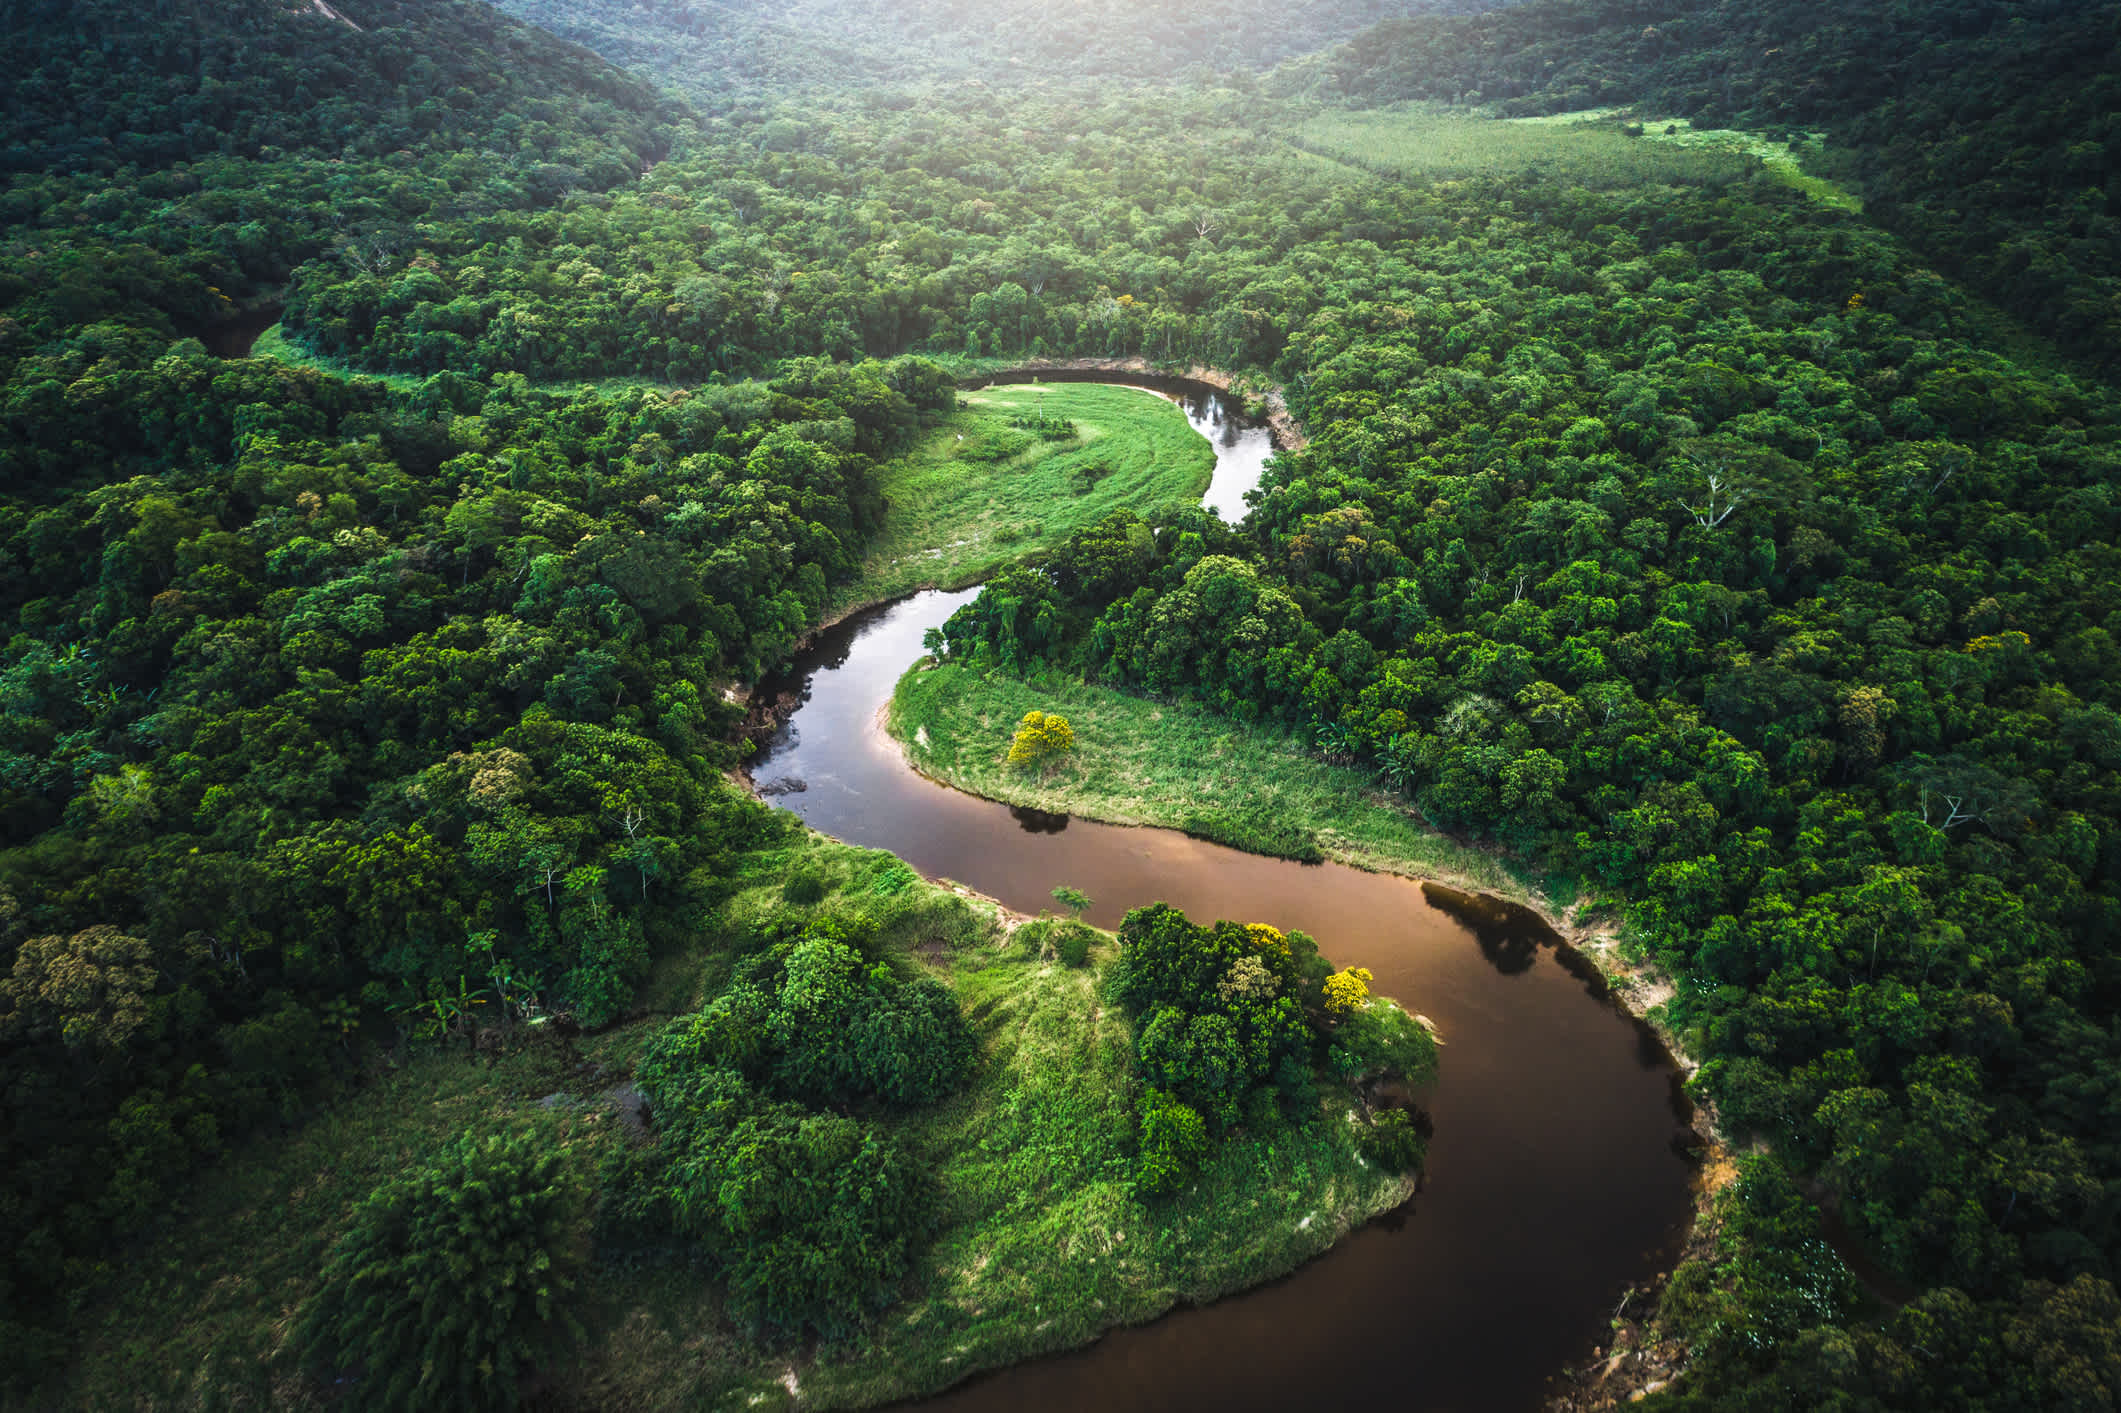  Vue aérienne de la forêt tropicale en Amazonie, au Brésil